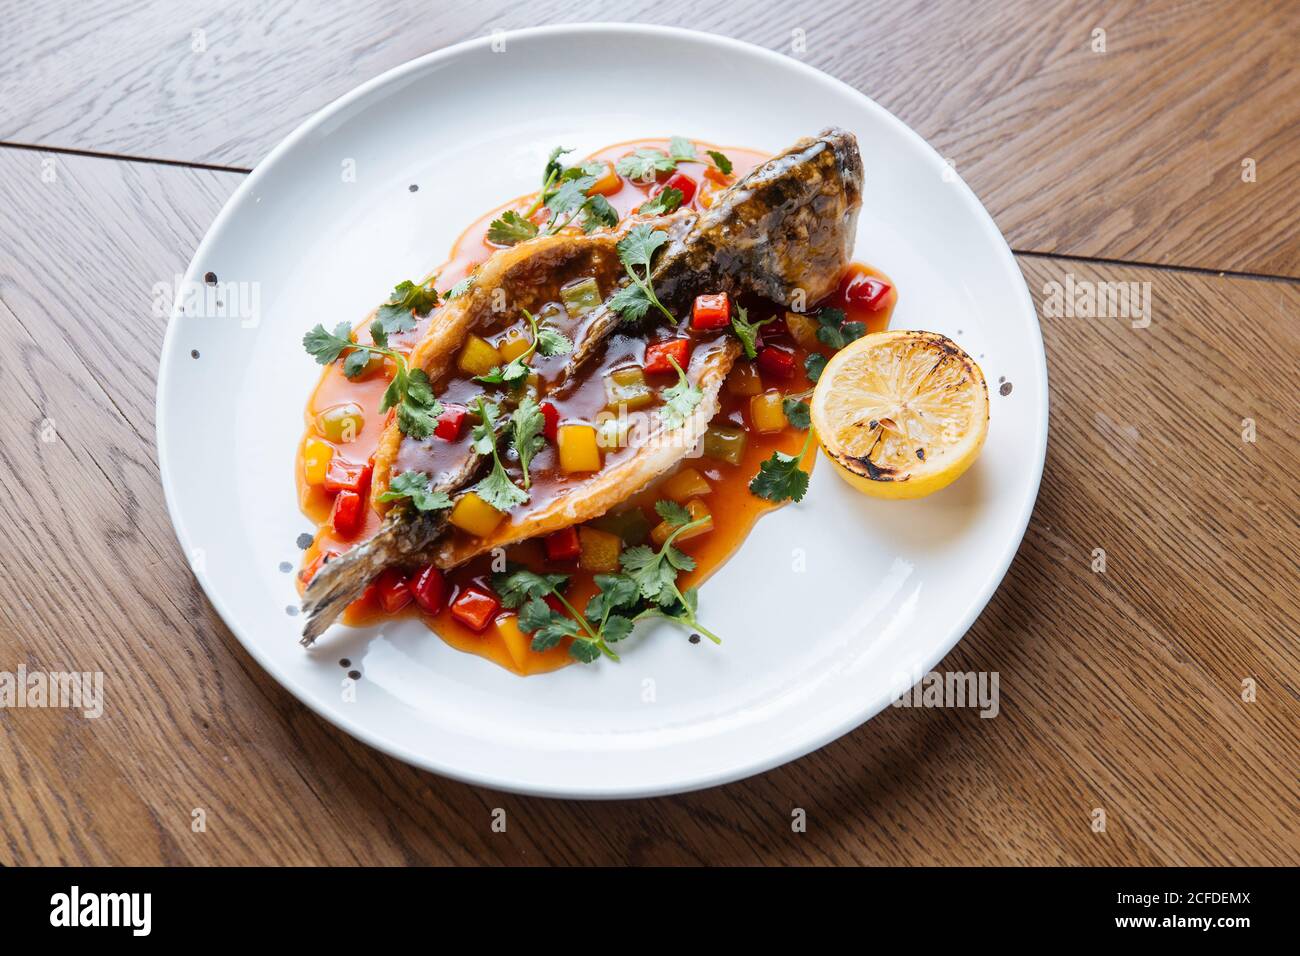 Desde arriba de todo el pescado blanco asado cortado y relleno con salsa de tomate y verduras adornadas con cilantro verde Foto de stock